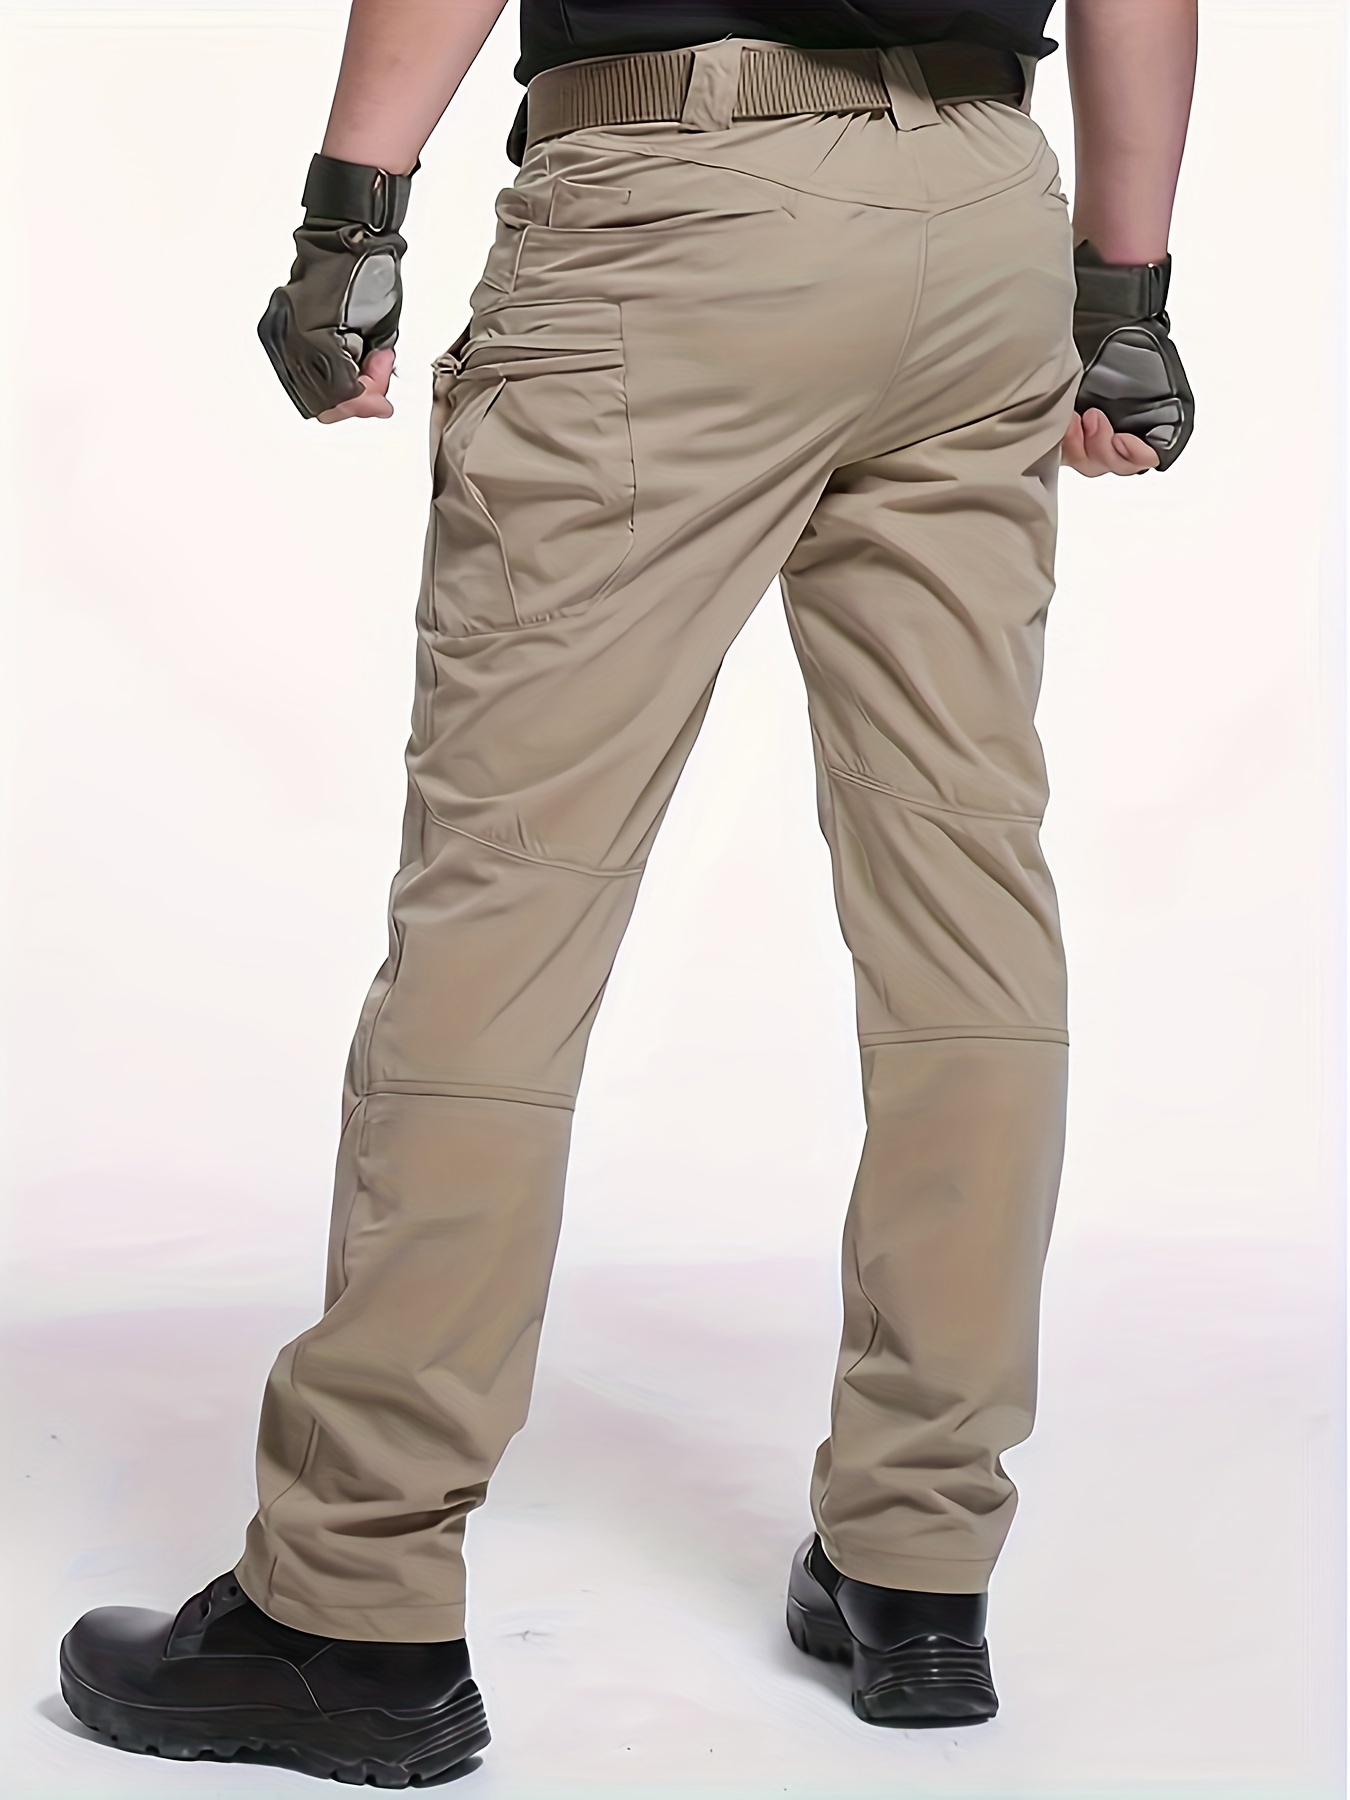 Durable Soldier Tactical Waterproof Pants Men Cargo Pants Combat Hiking  Outdoor 